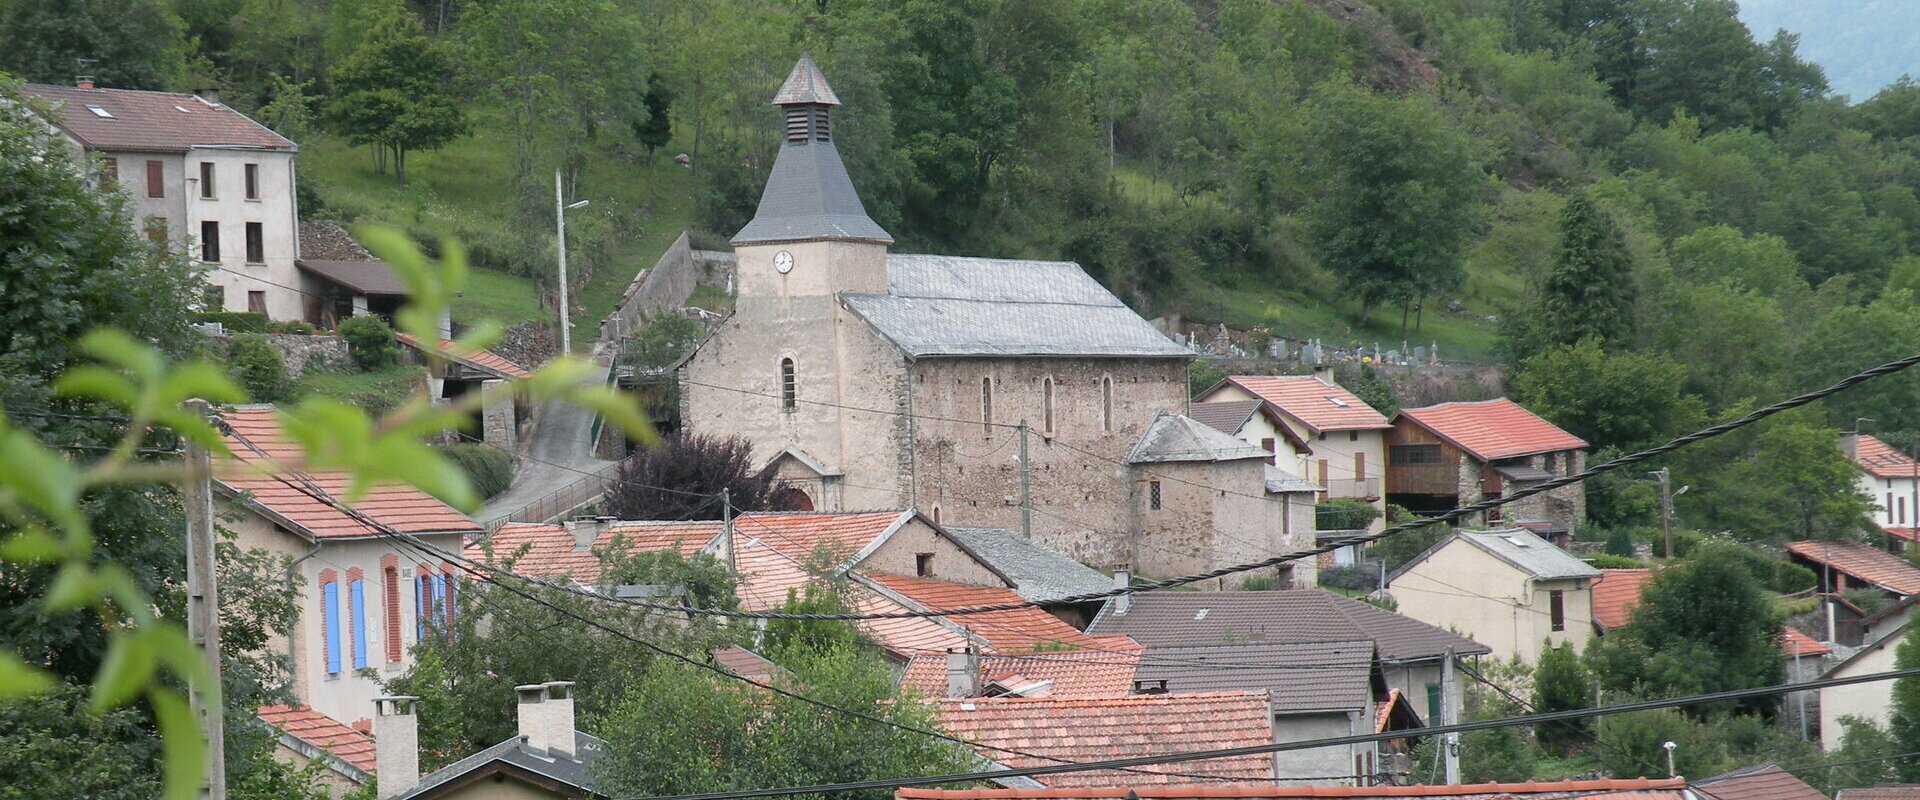 Larcat petit village typique des Pyrénées